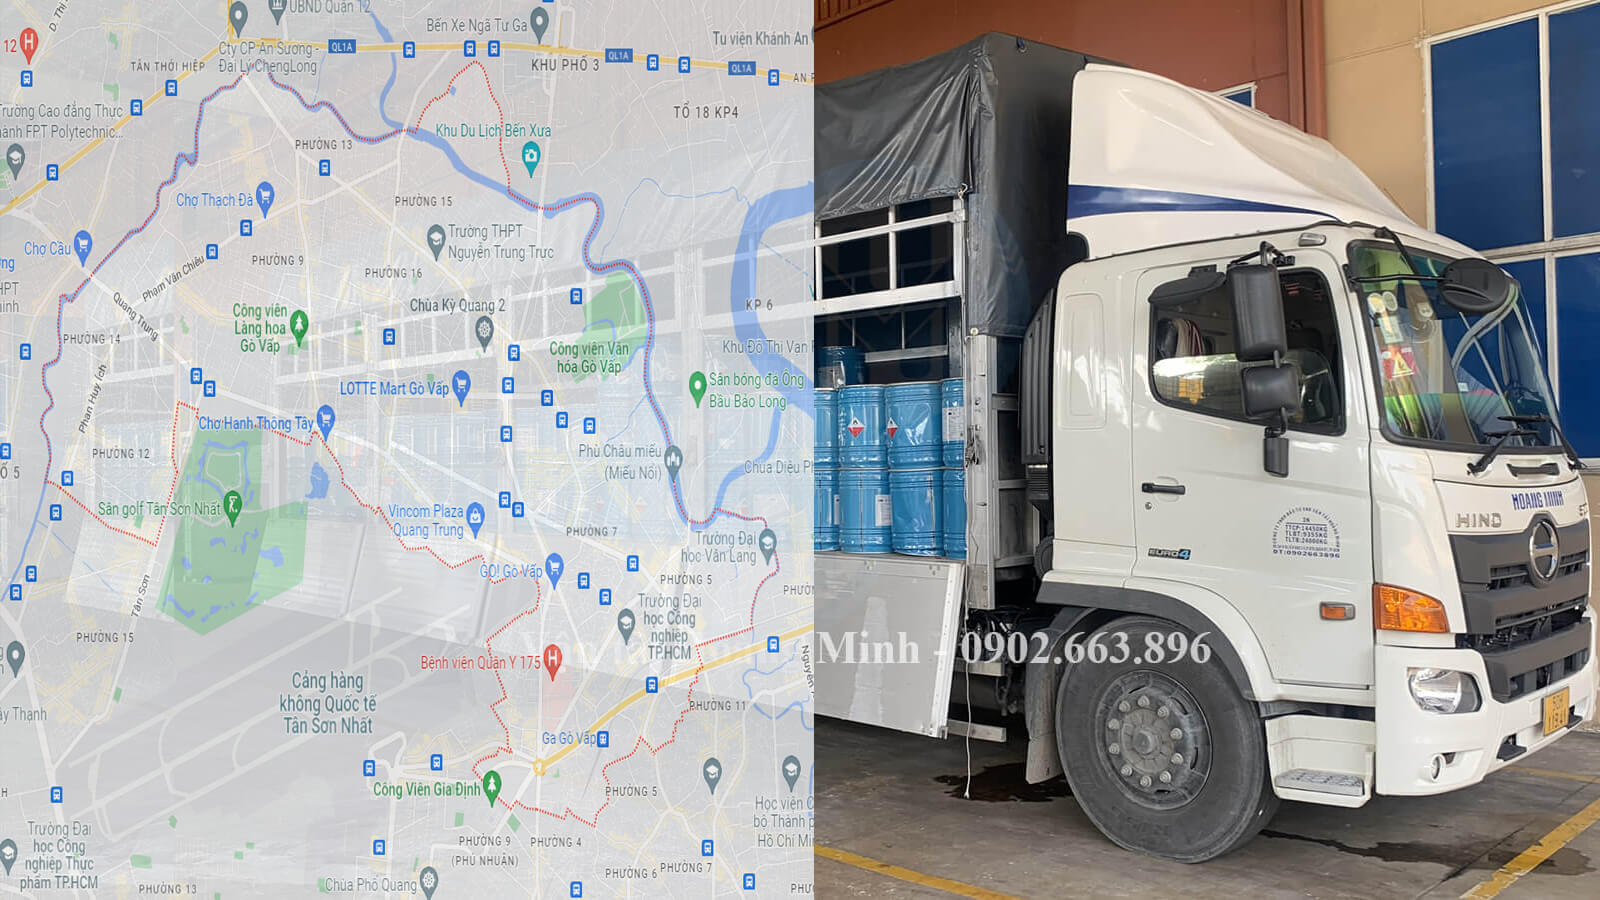 Thuê xe tải chở hàng quận Gò Vấp.jpg